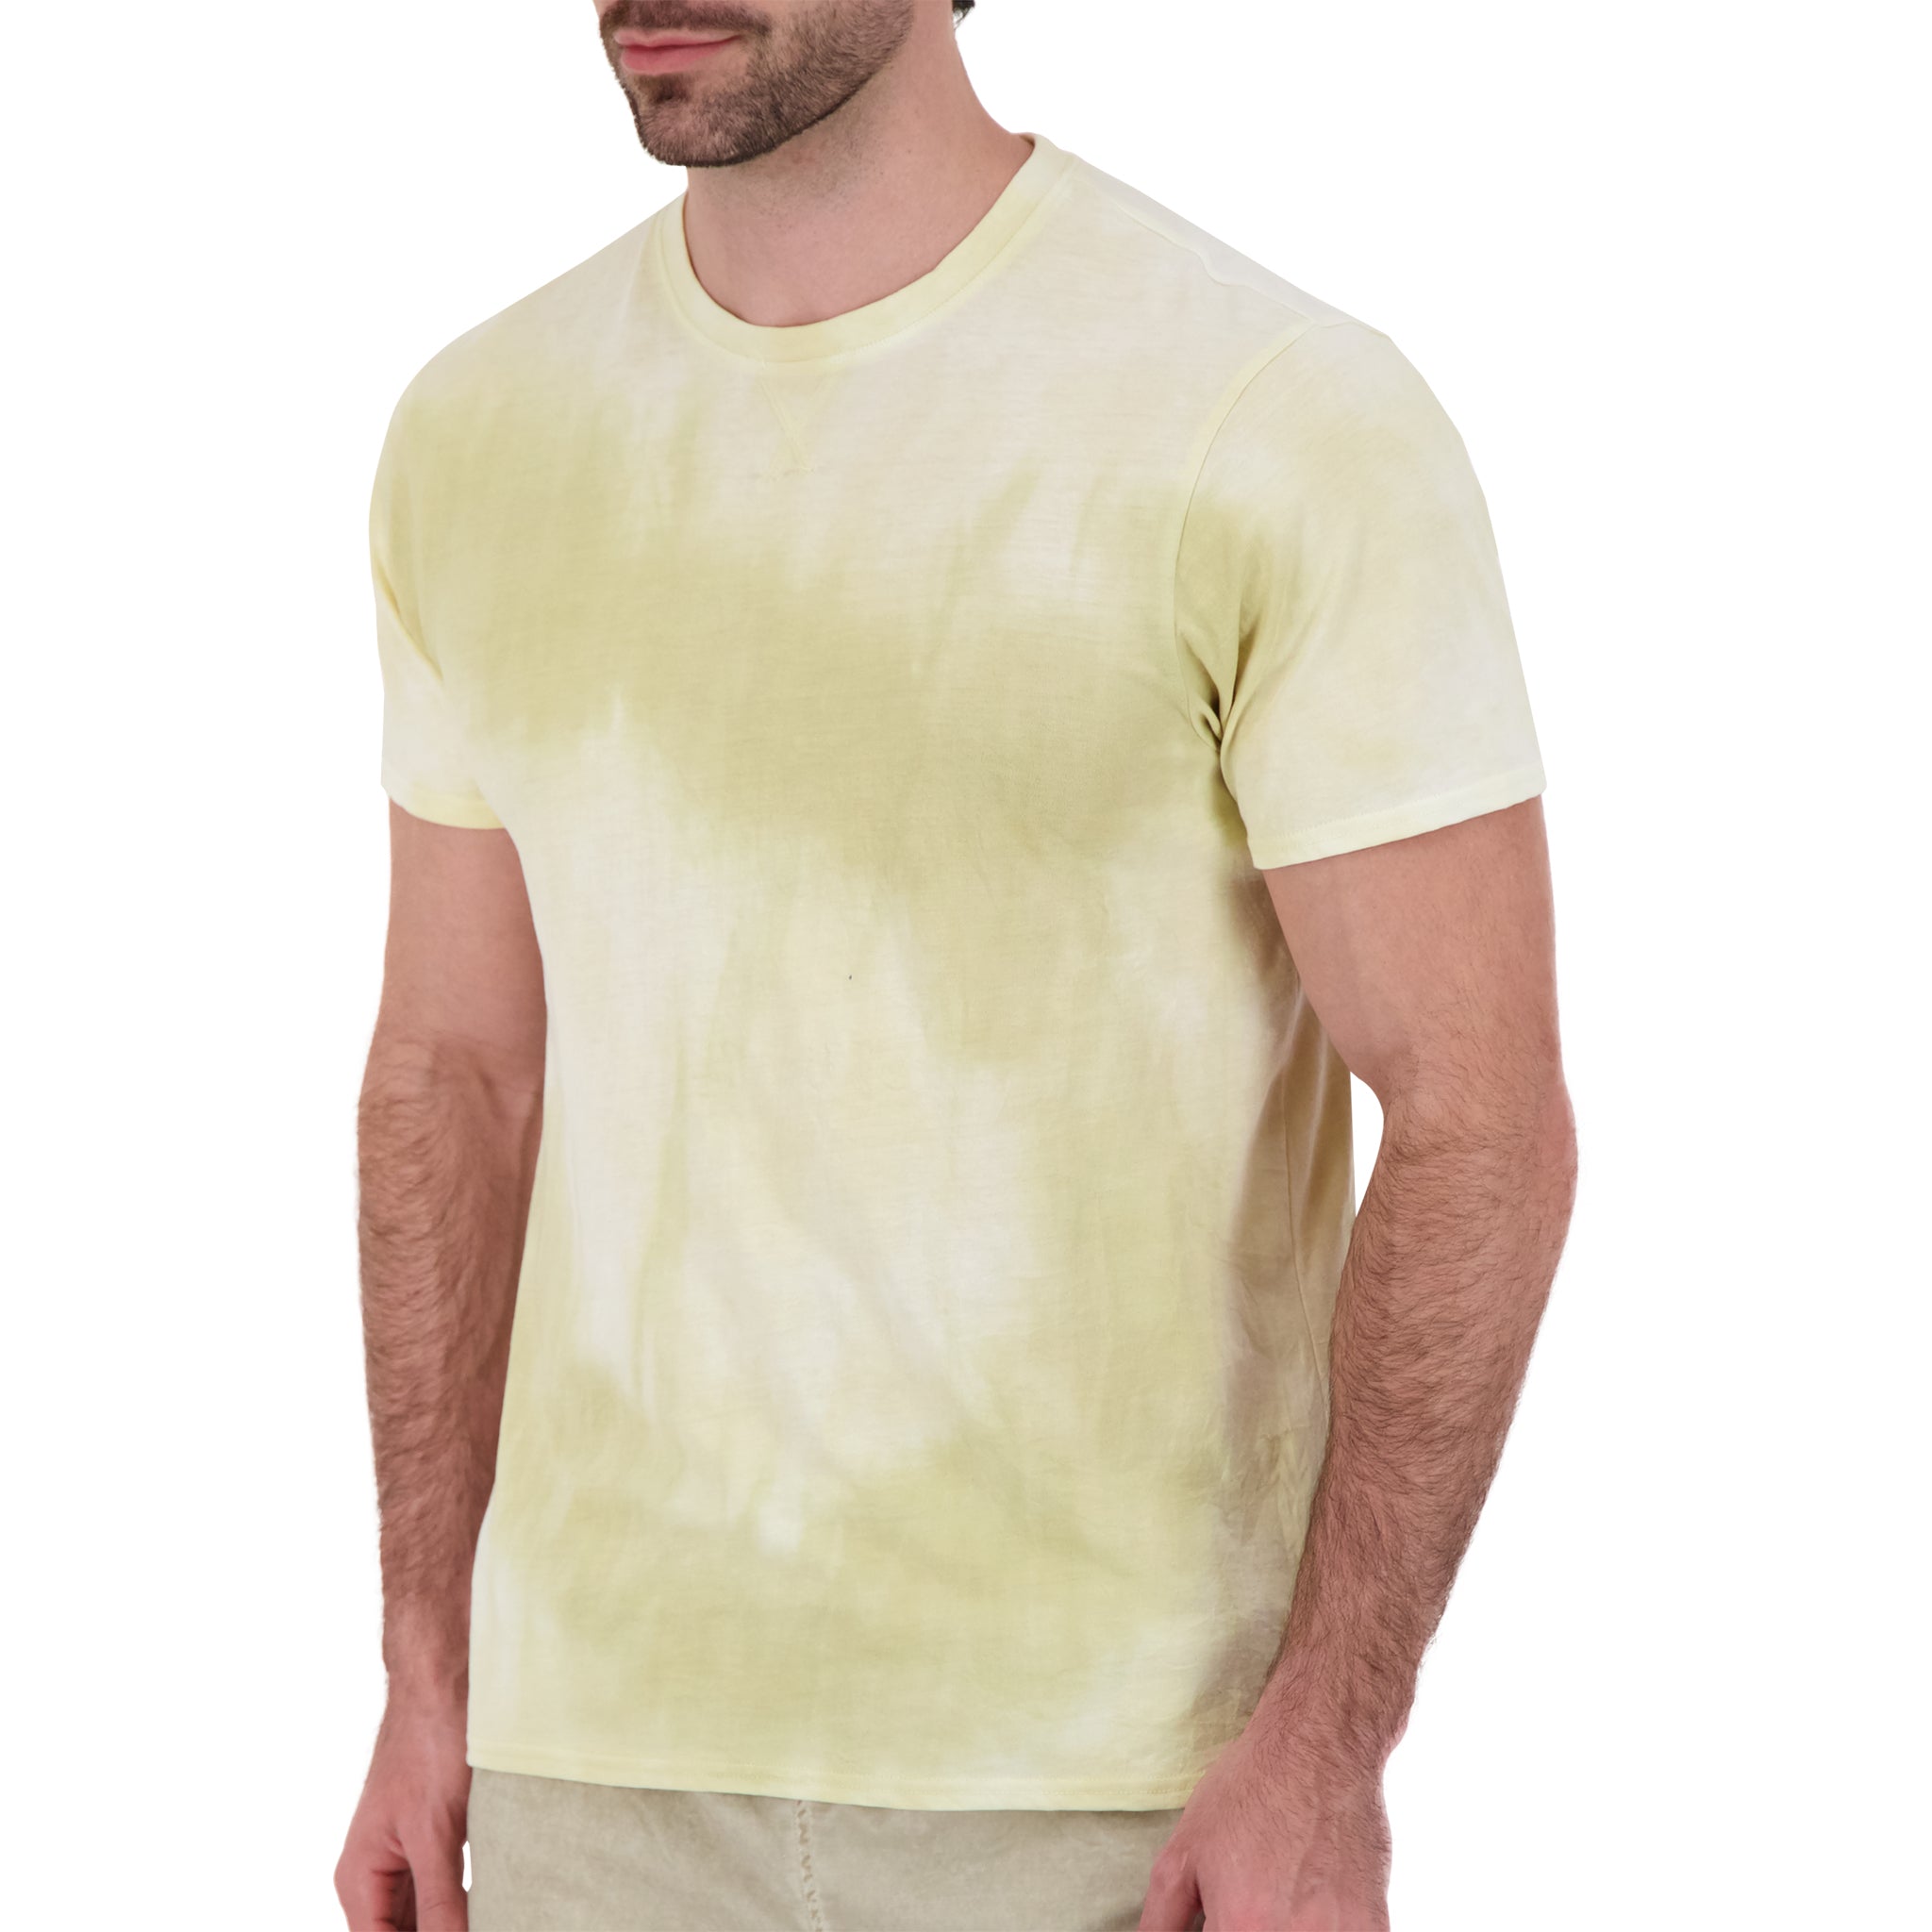 Tie Dye T-Shirt in Tan